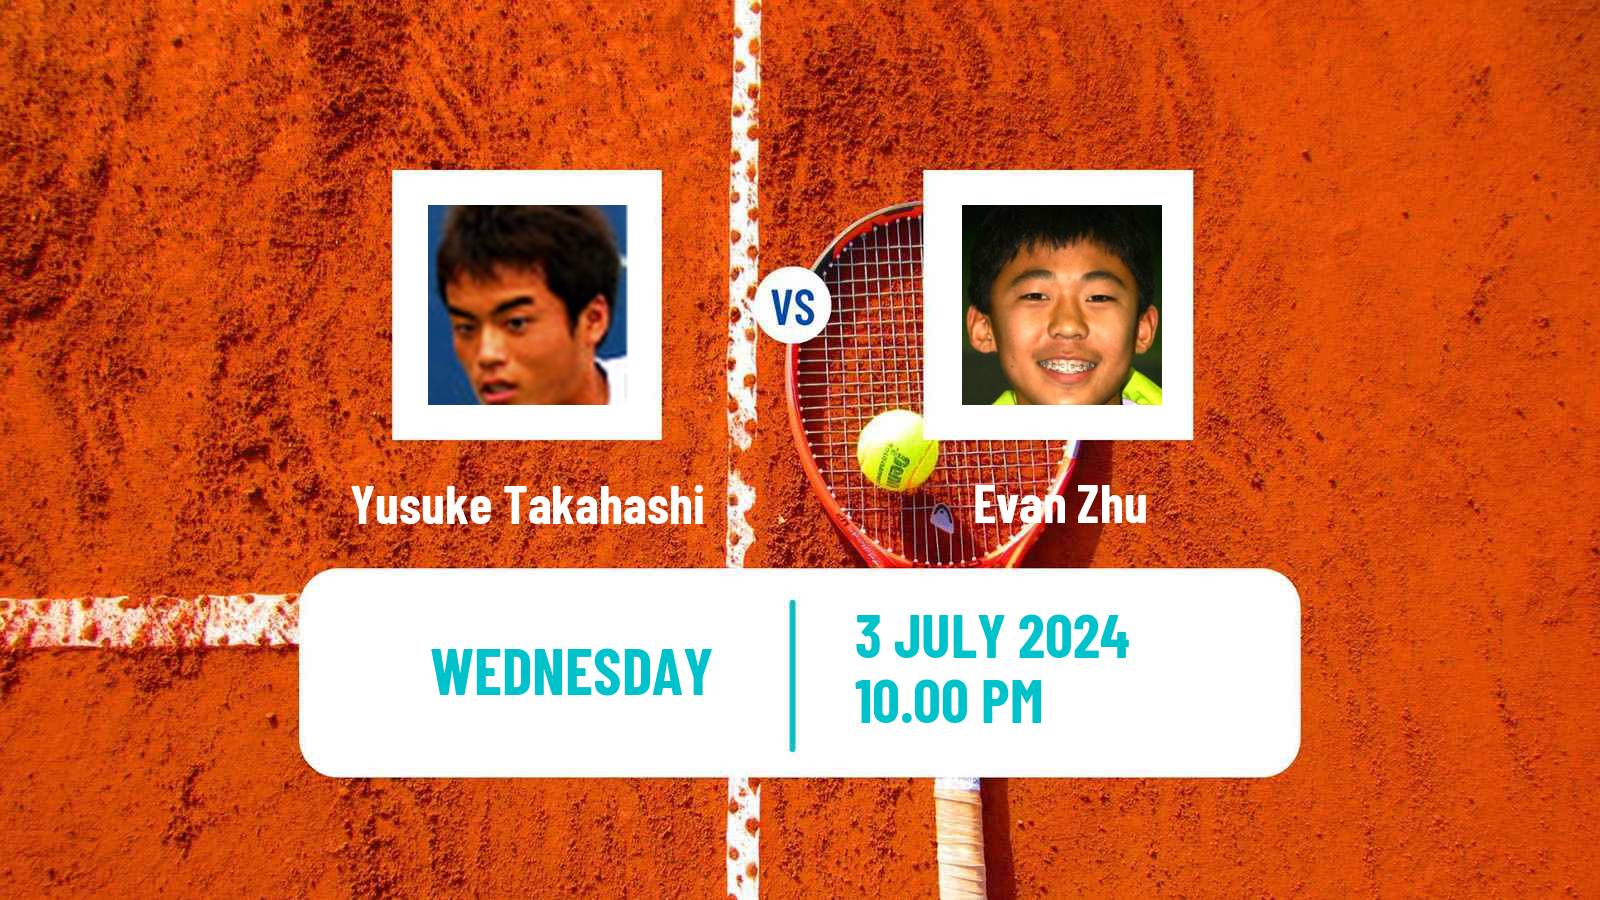 Tennis ITF M15 Tokyo Men Yusuke Takahashi - Evan Zhu